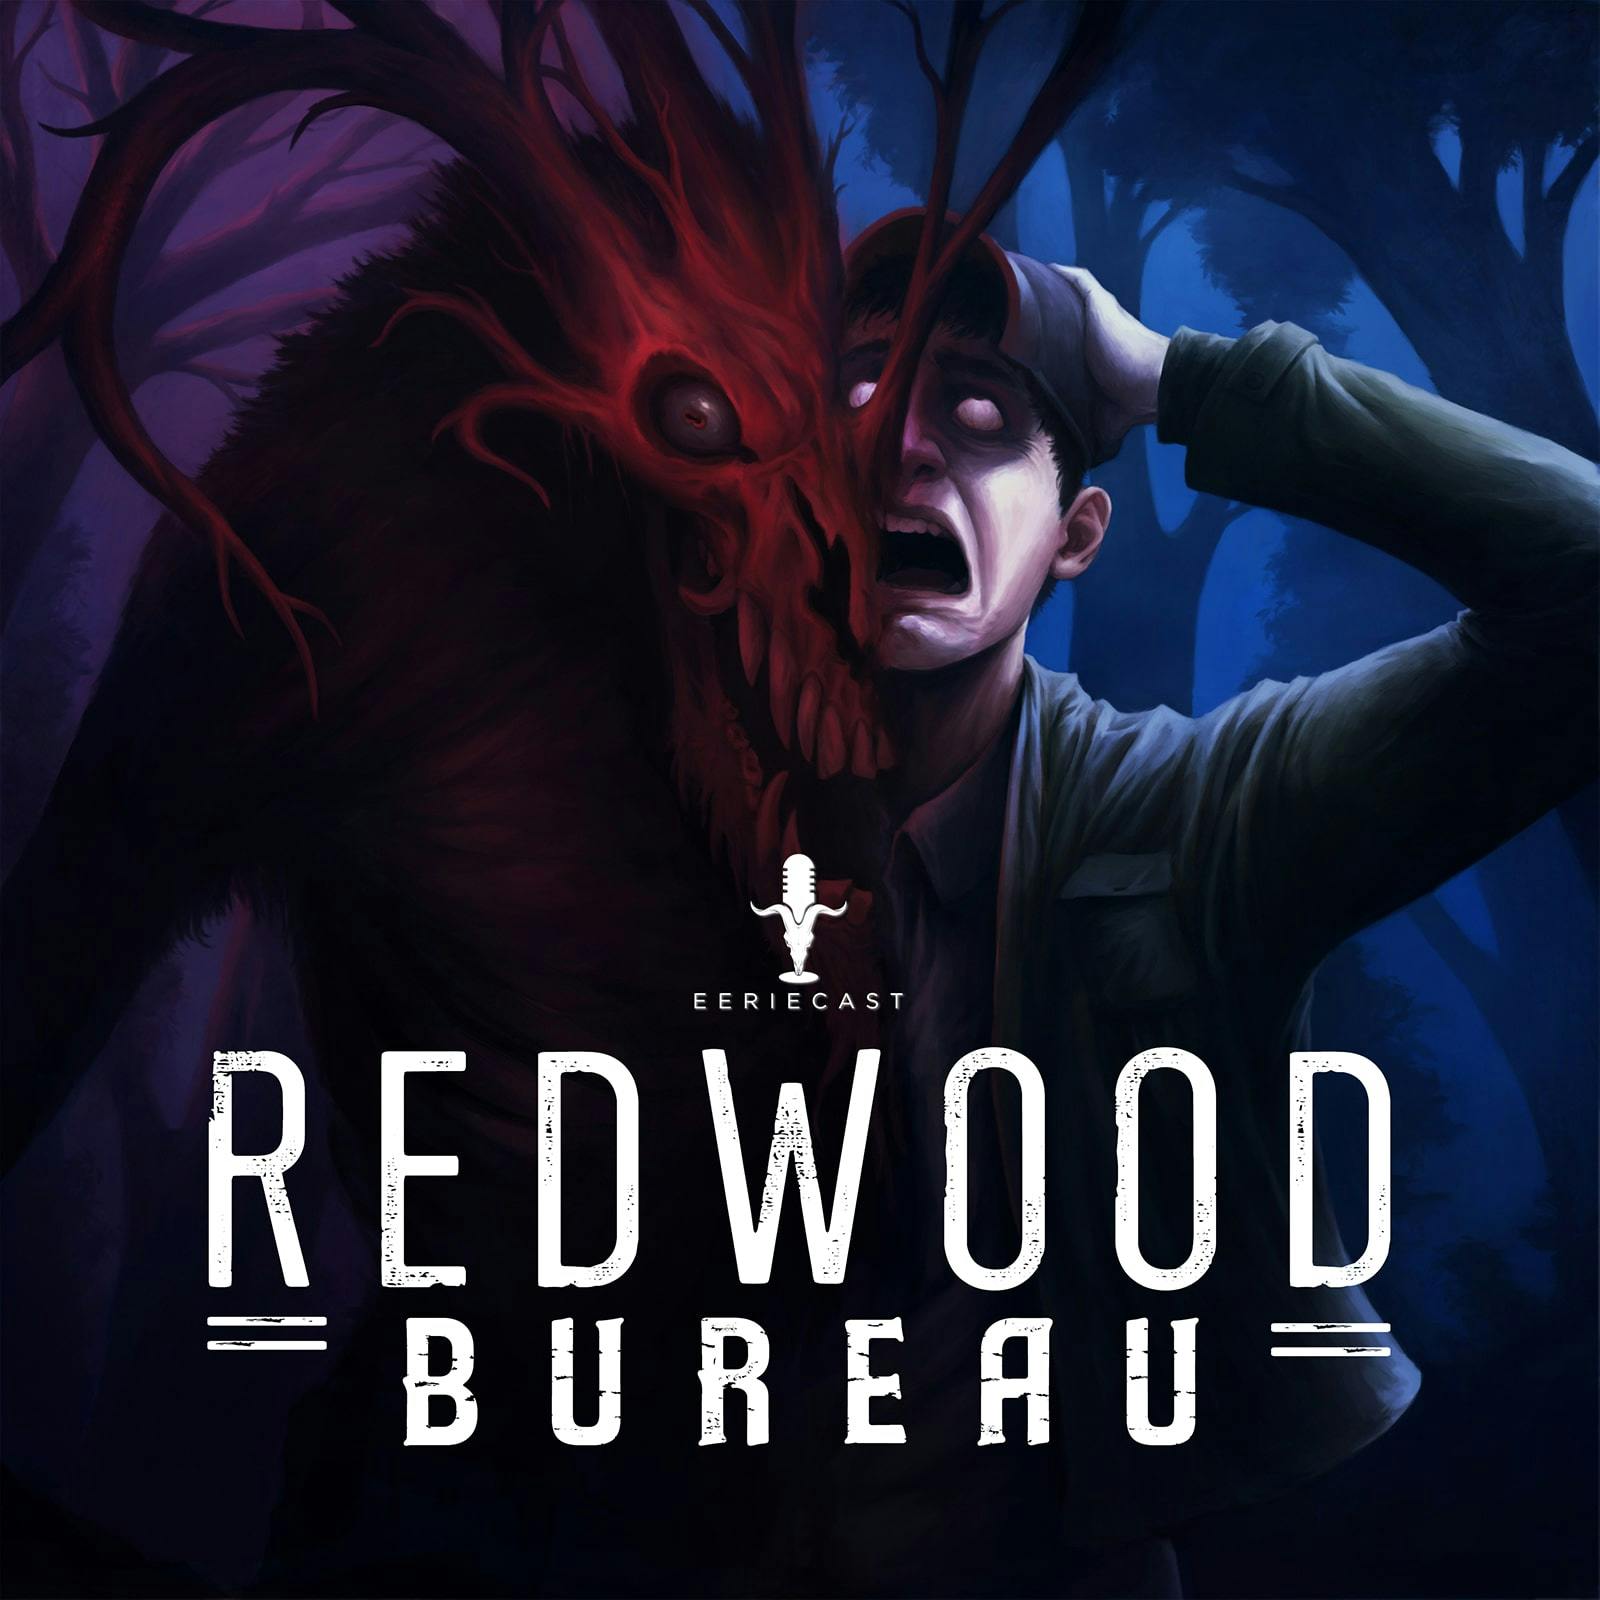 BEWARE the Redwood Bureau